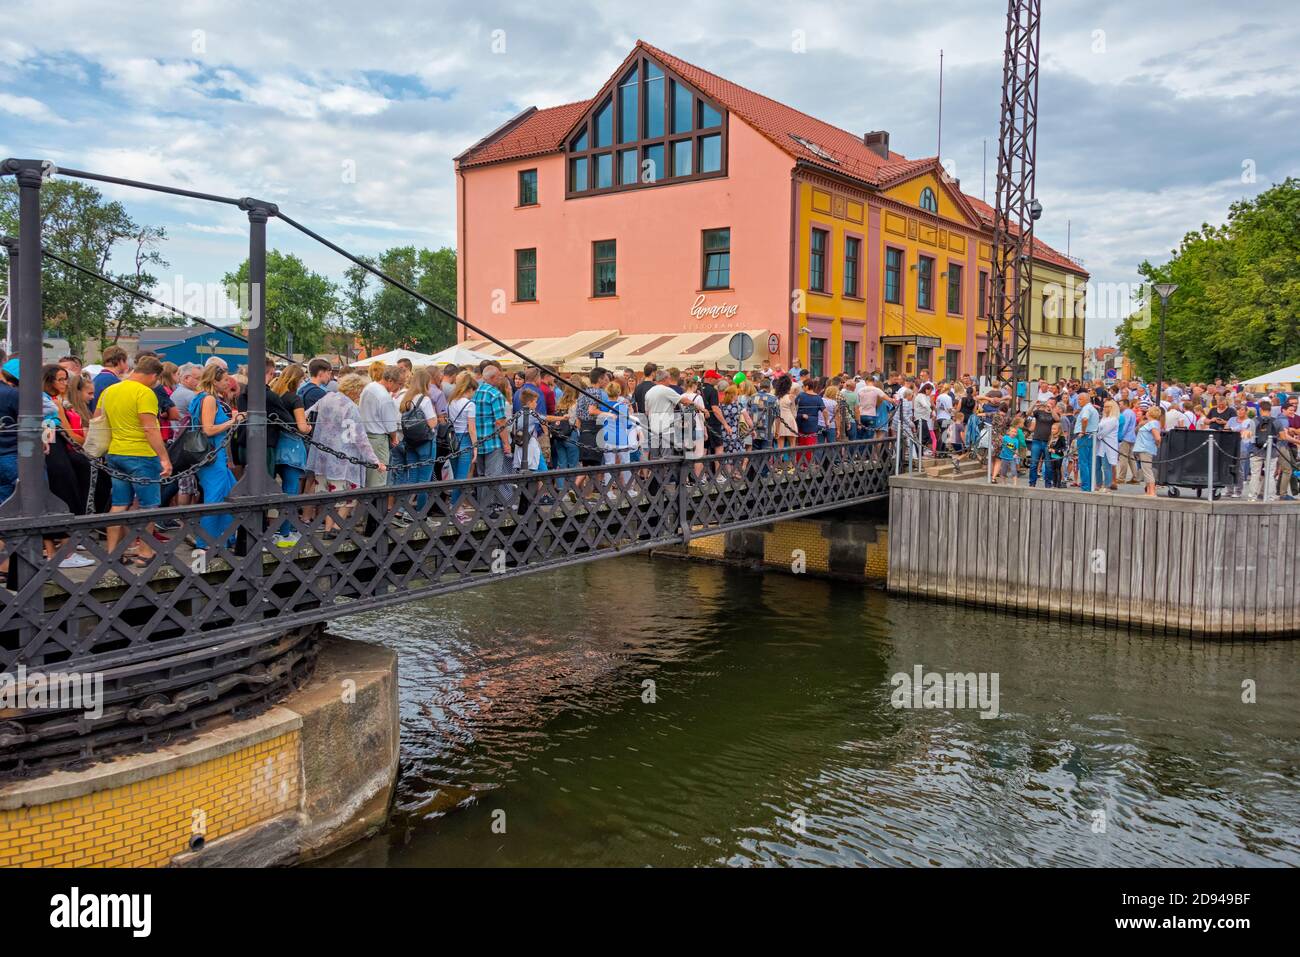 Gente que cruza el Puente de las cadenas (el único puente giratorio de Lituania rotado por dos personas) durante el Festival del Mar de Klaipeda, Klaipeda, Lituania Foto de stock